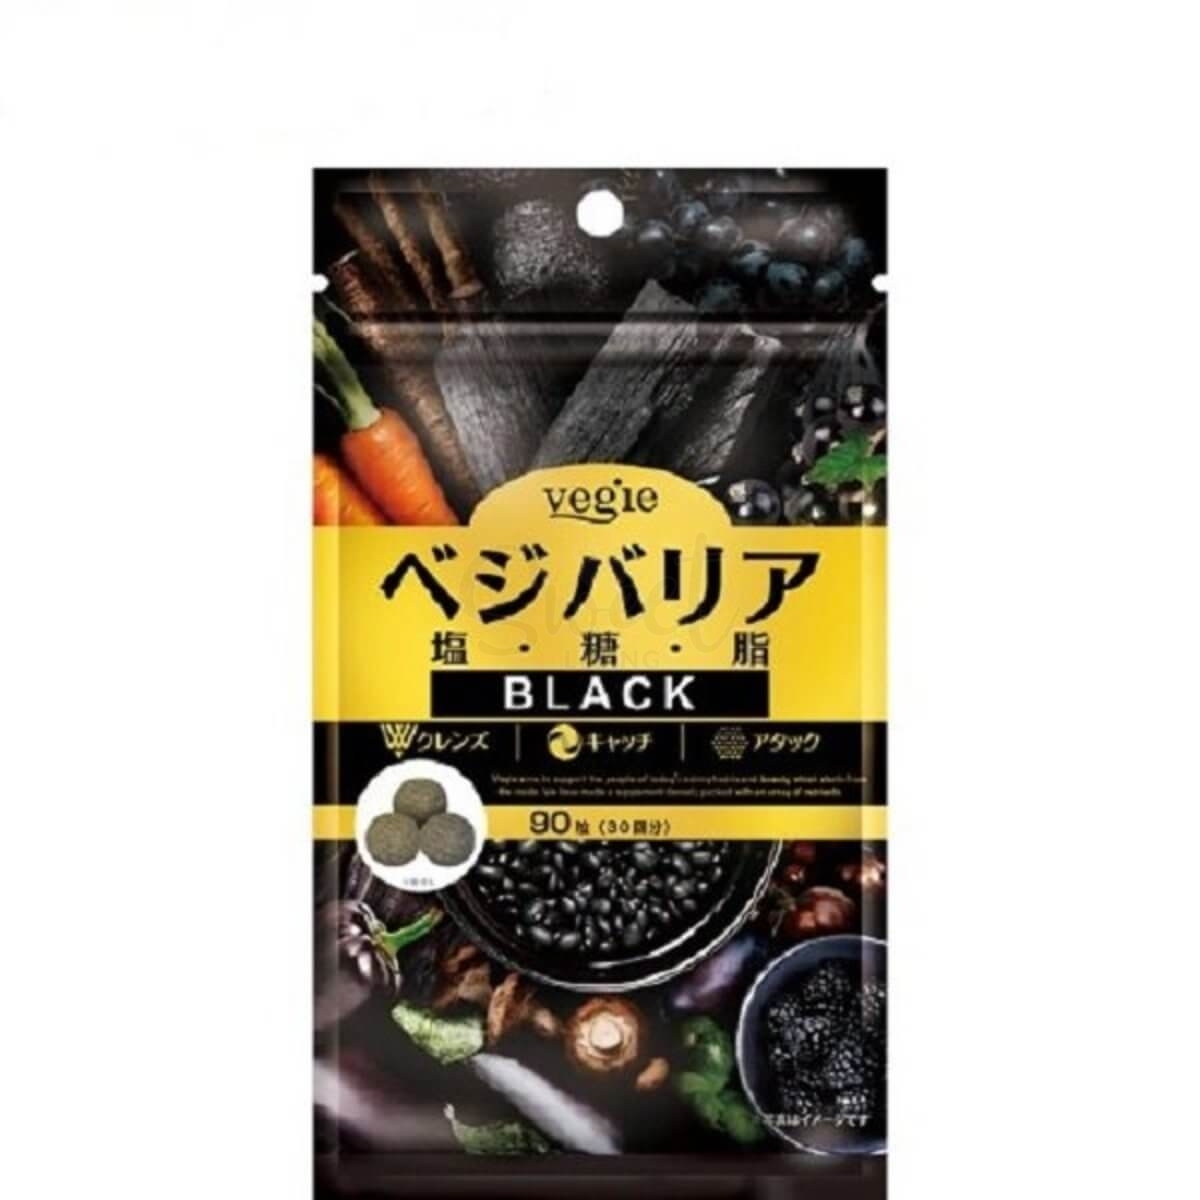 【日本 Vegie】 盐糖脂 Vegie Barrier BLACK 酵素 黑炭燃脂片 90粒/包 -  - 1@ - Sweet Living